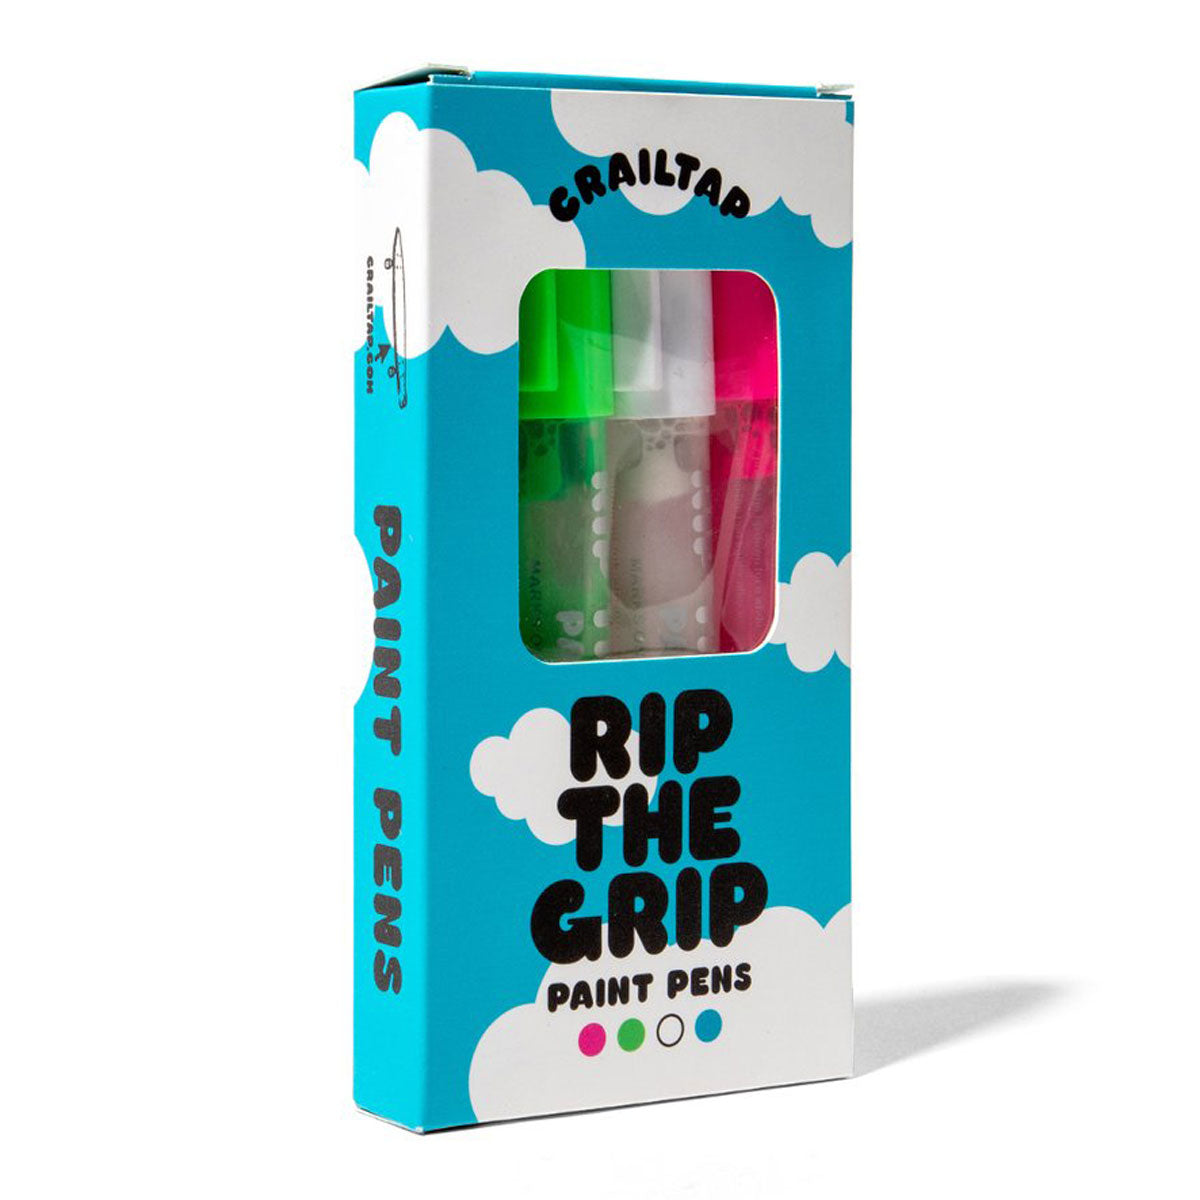 Crailtap Rip the Grip Paint Pens - Multi Color image 2